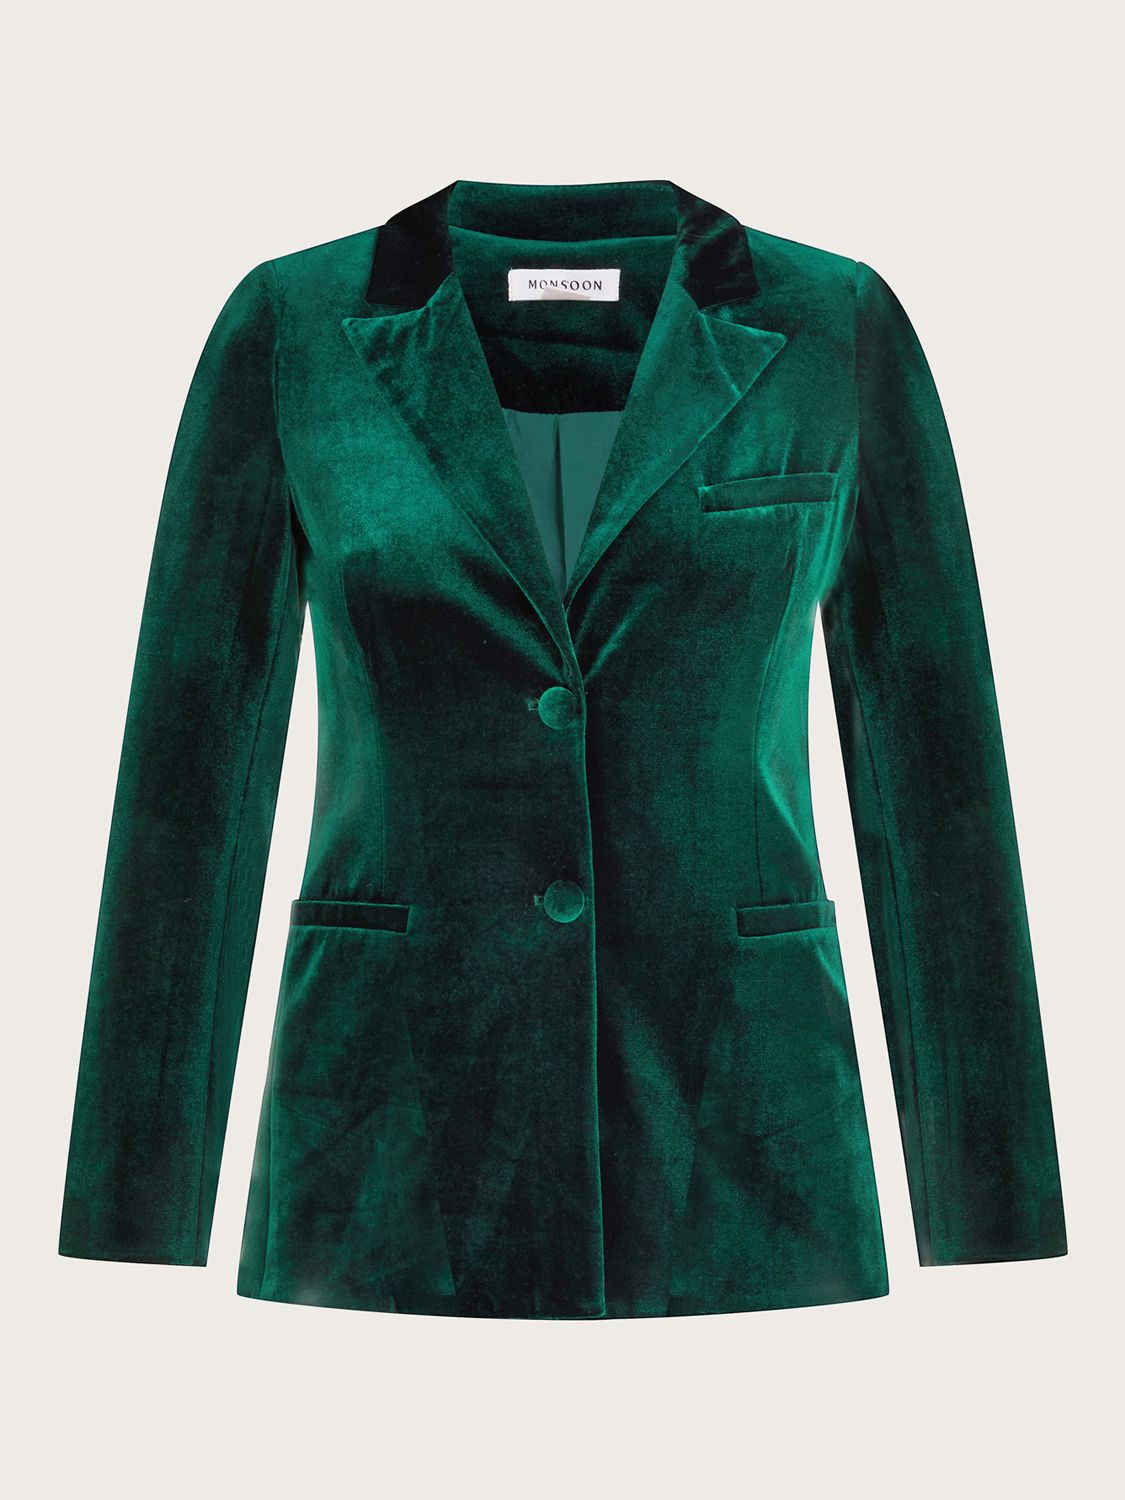 Monsoon Verity Velvet Jacket, Green at John Lewis & Partners